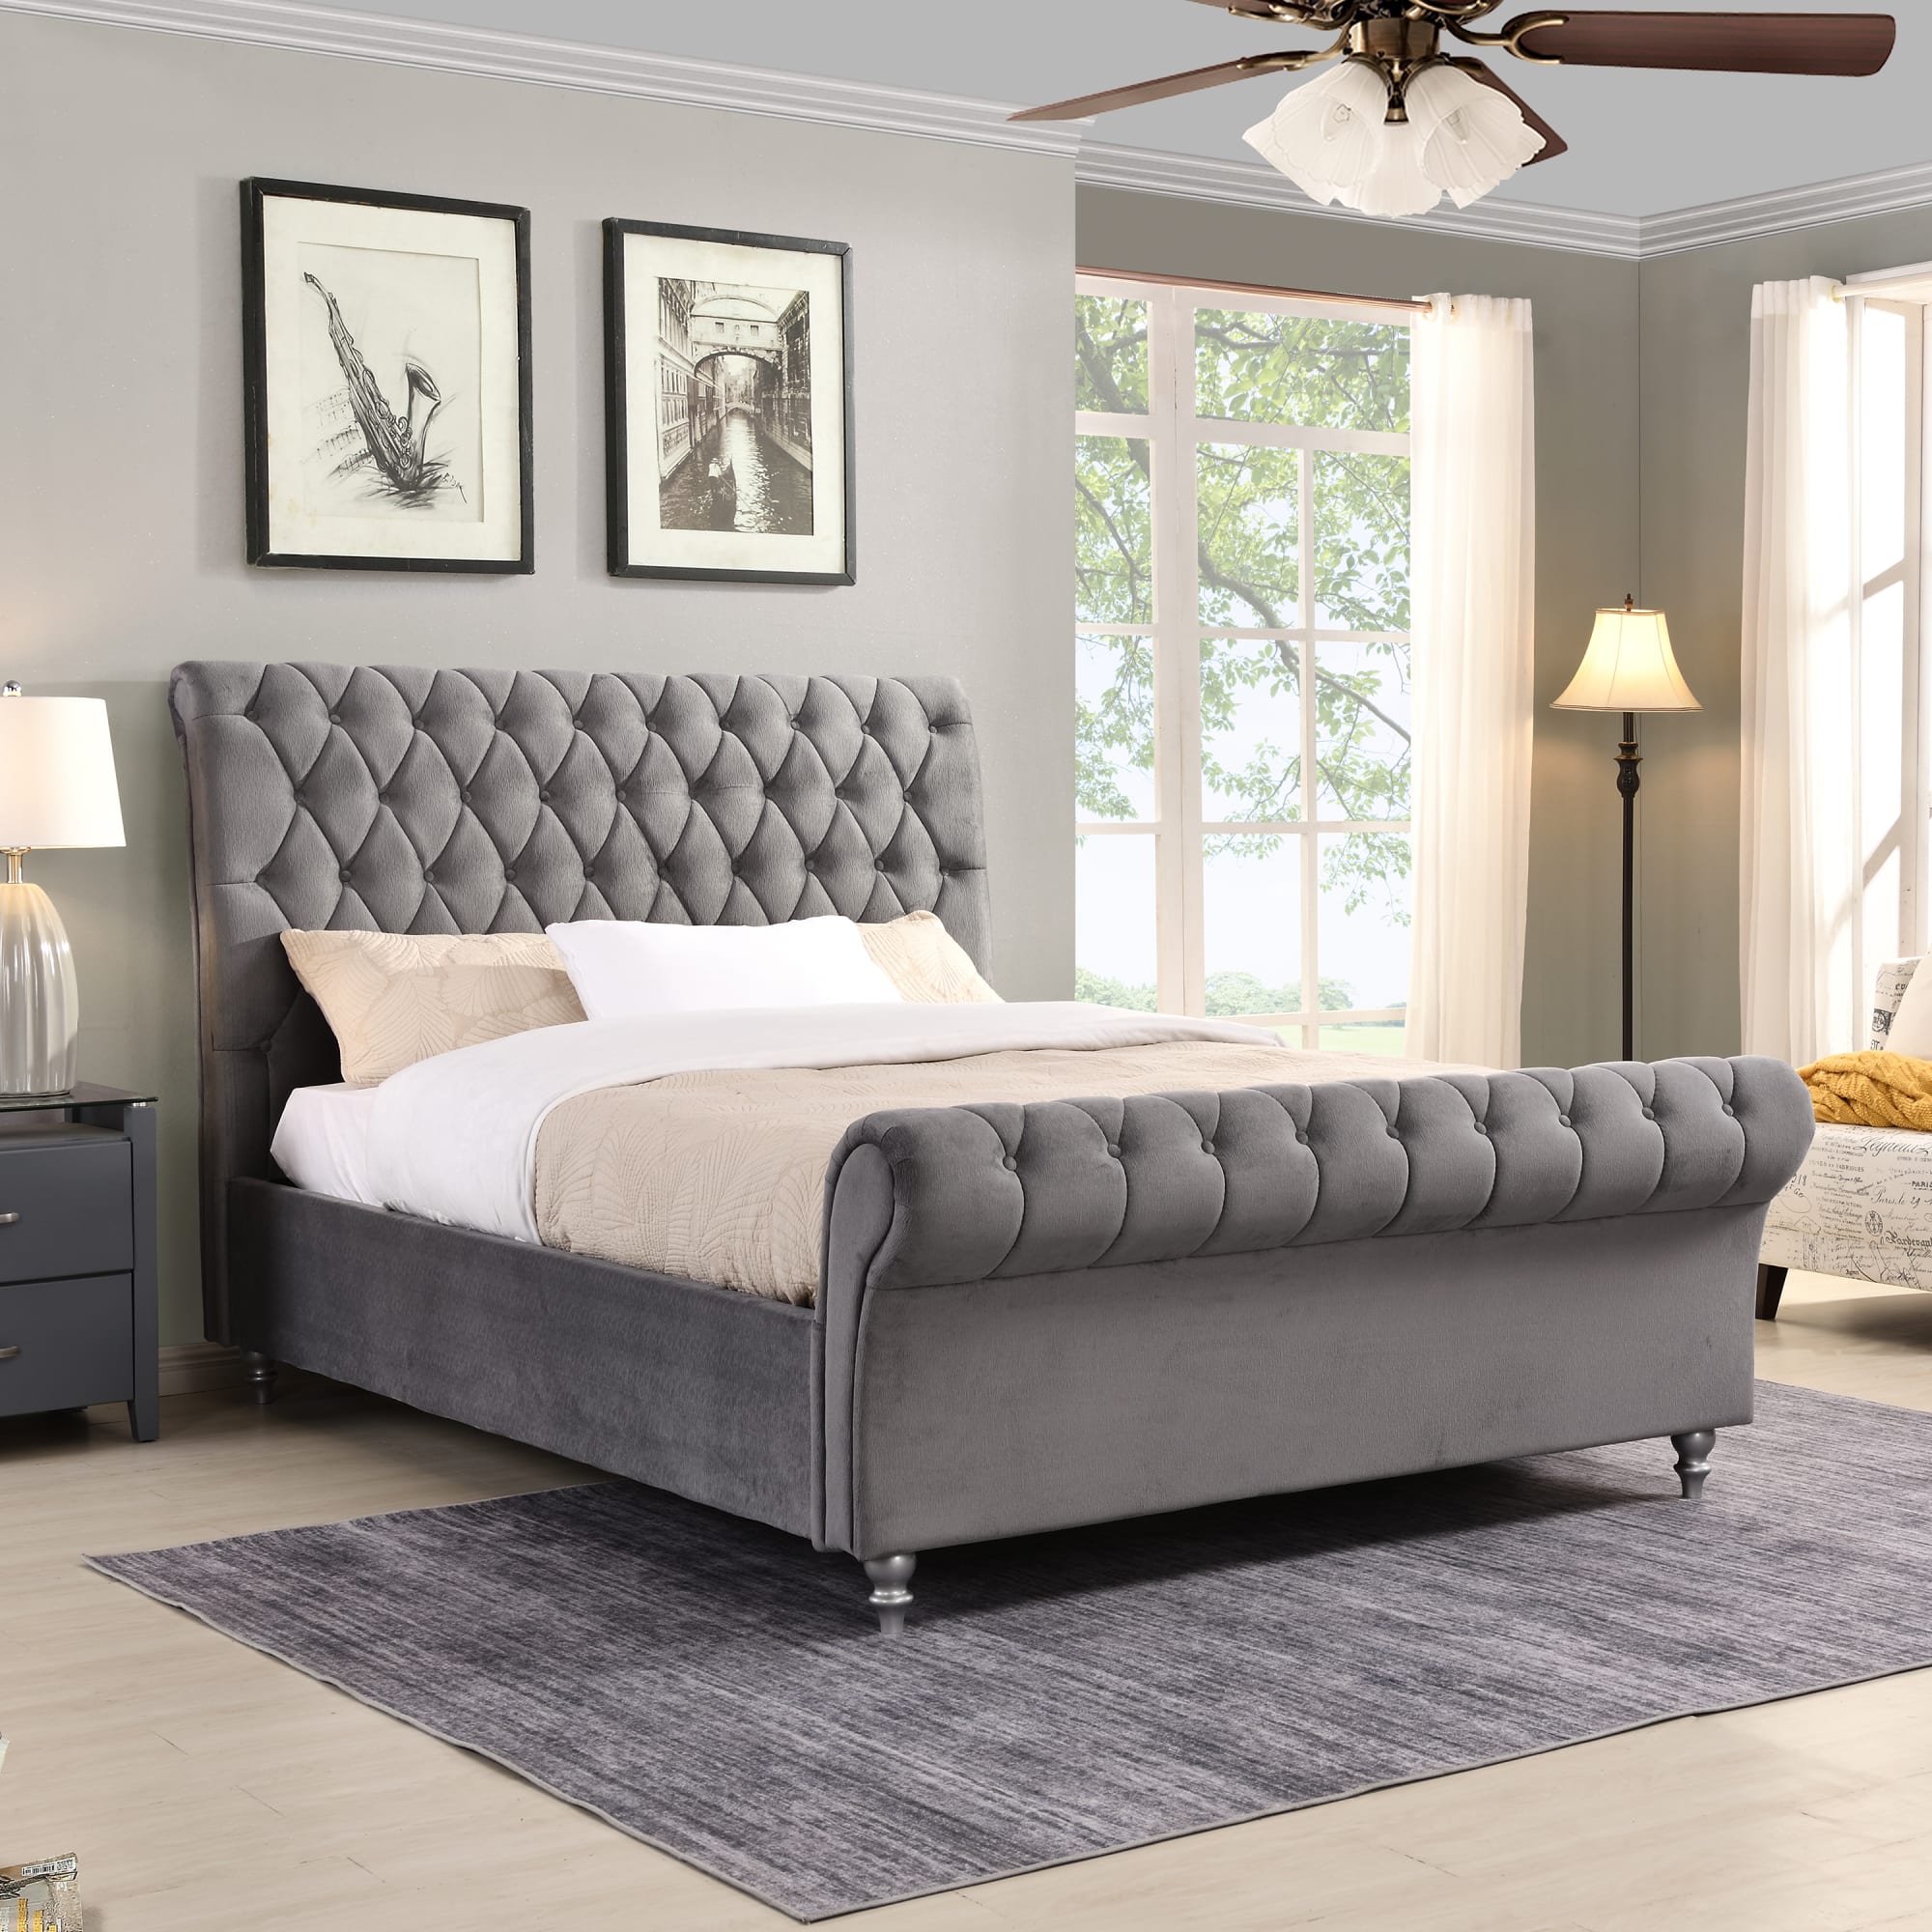 grey bed set